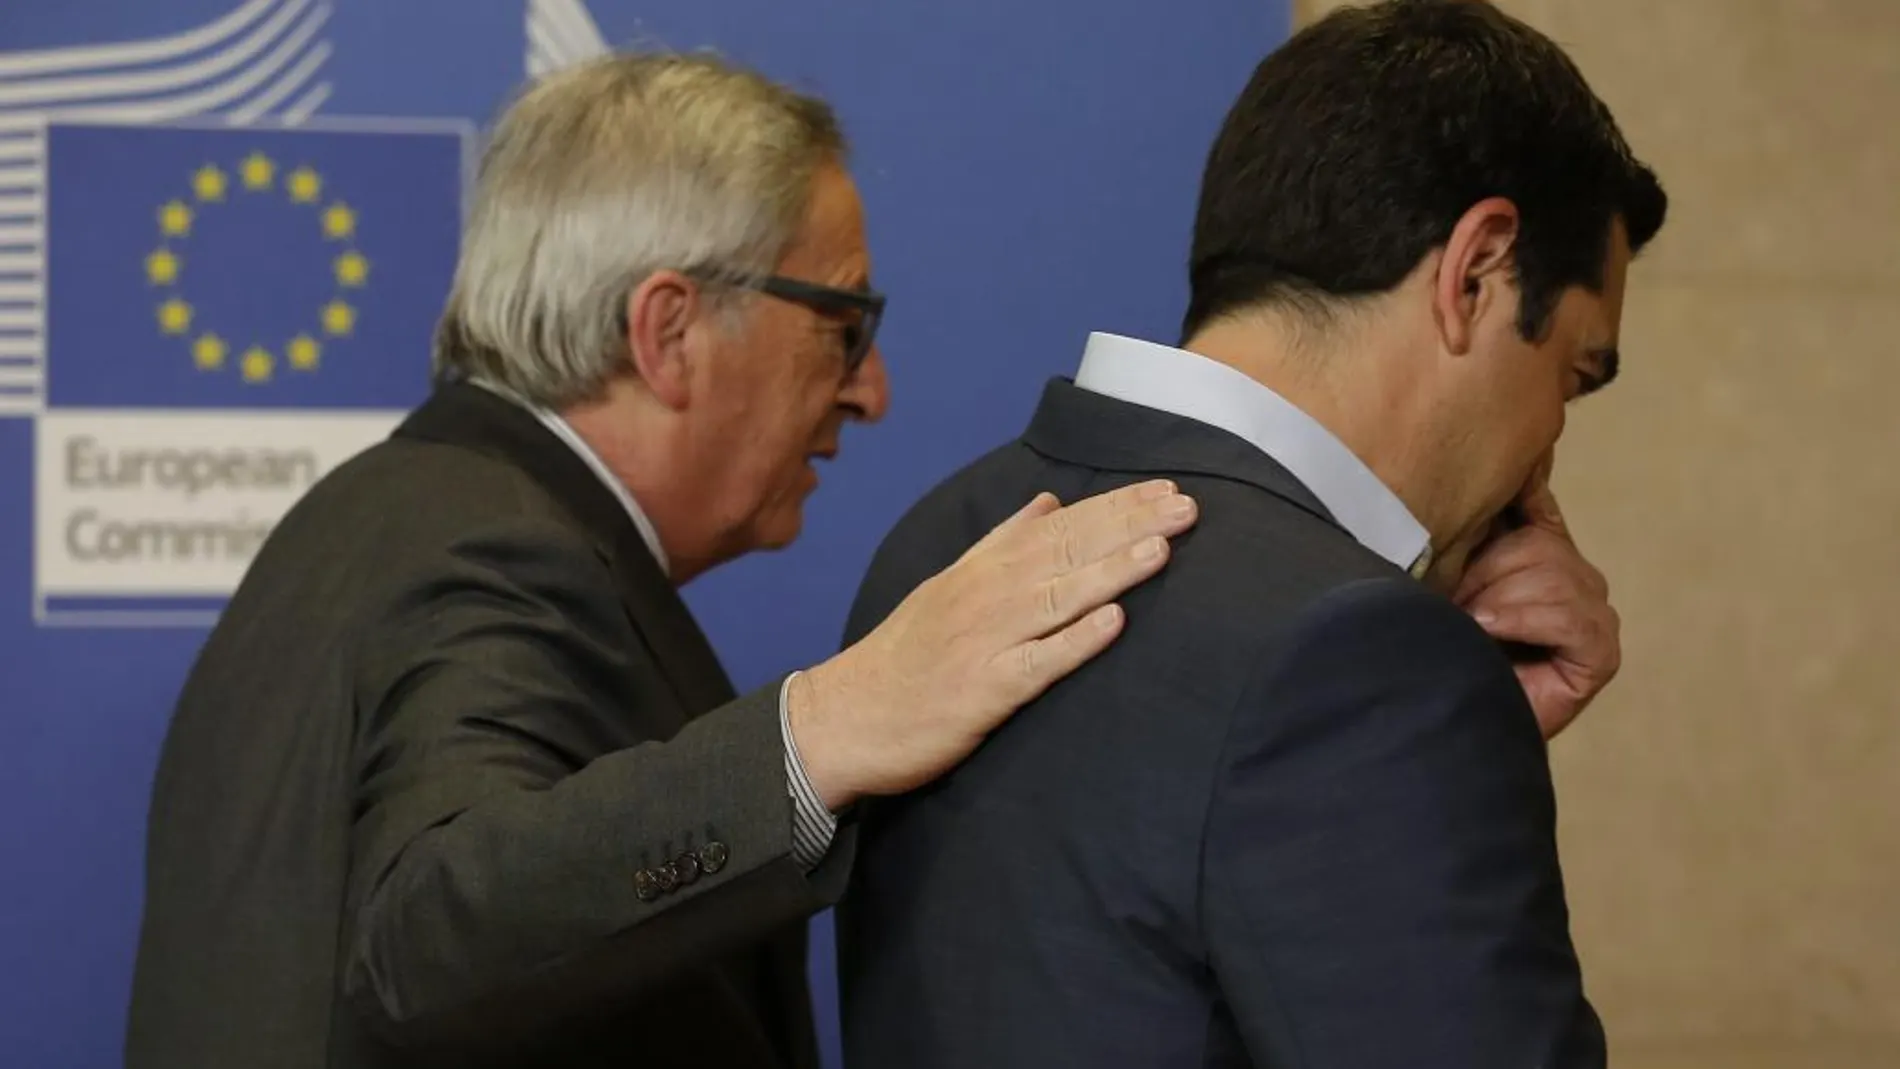 El presidente de la CE, Jean-Claude Juncker recibe al primer ministro griego Alexis Tsipras a su llegada a la reunión mantenida en la sede de la CE en Bruselas.